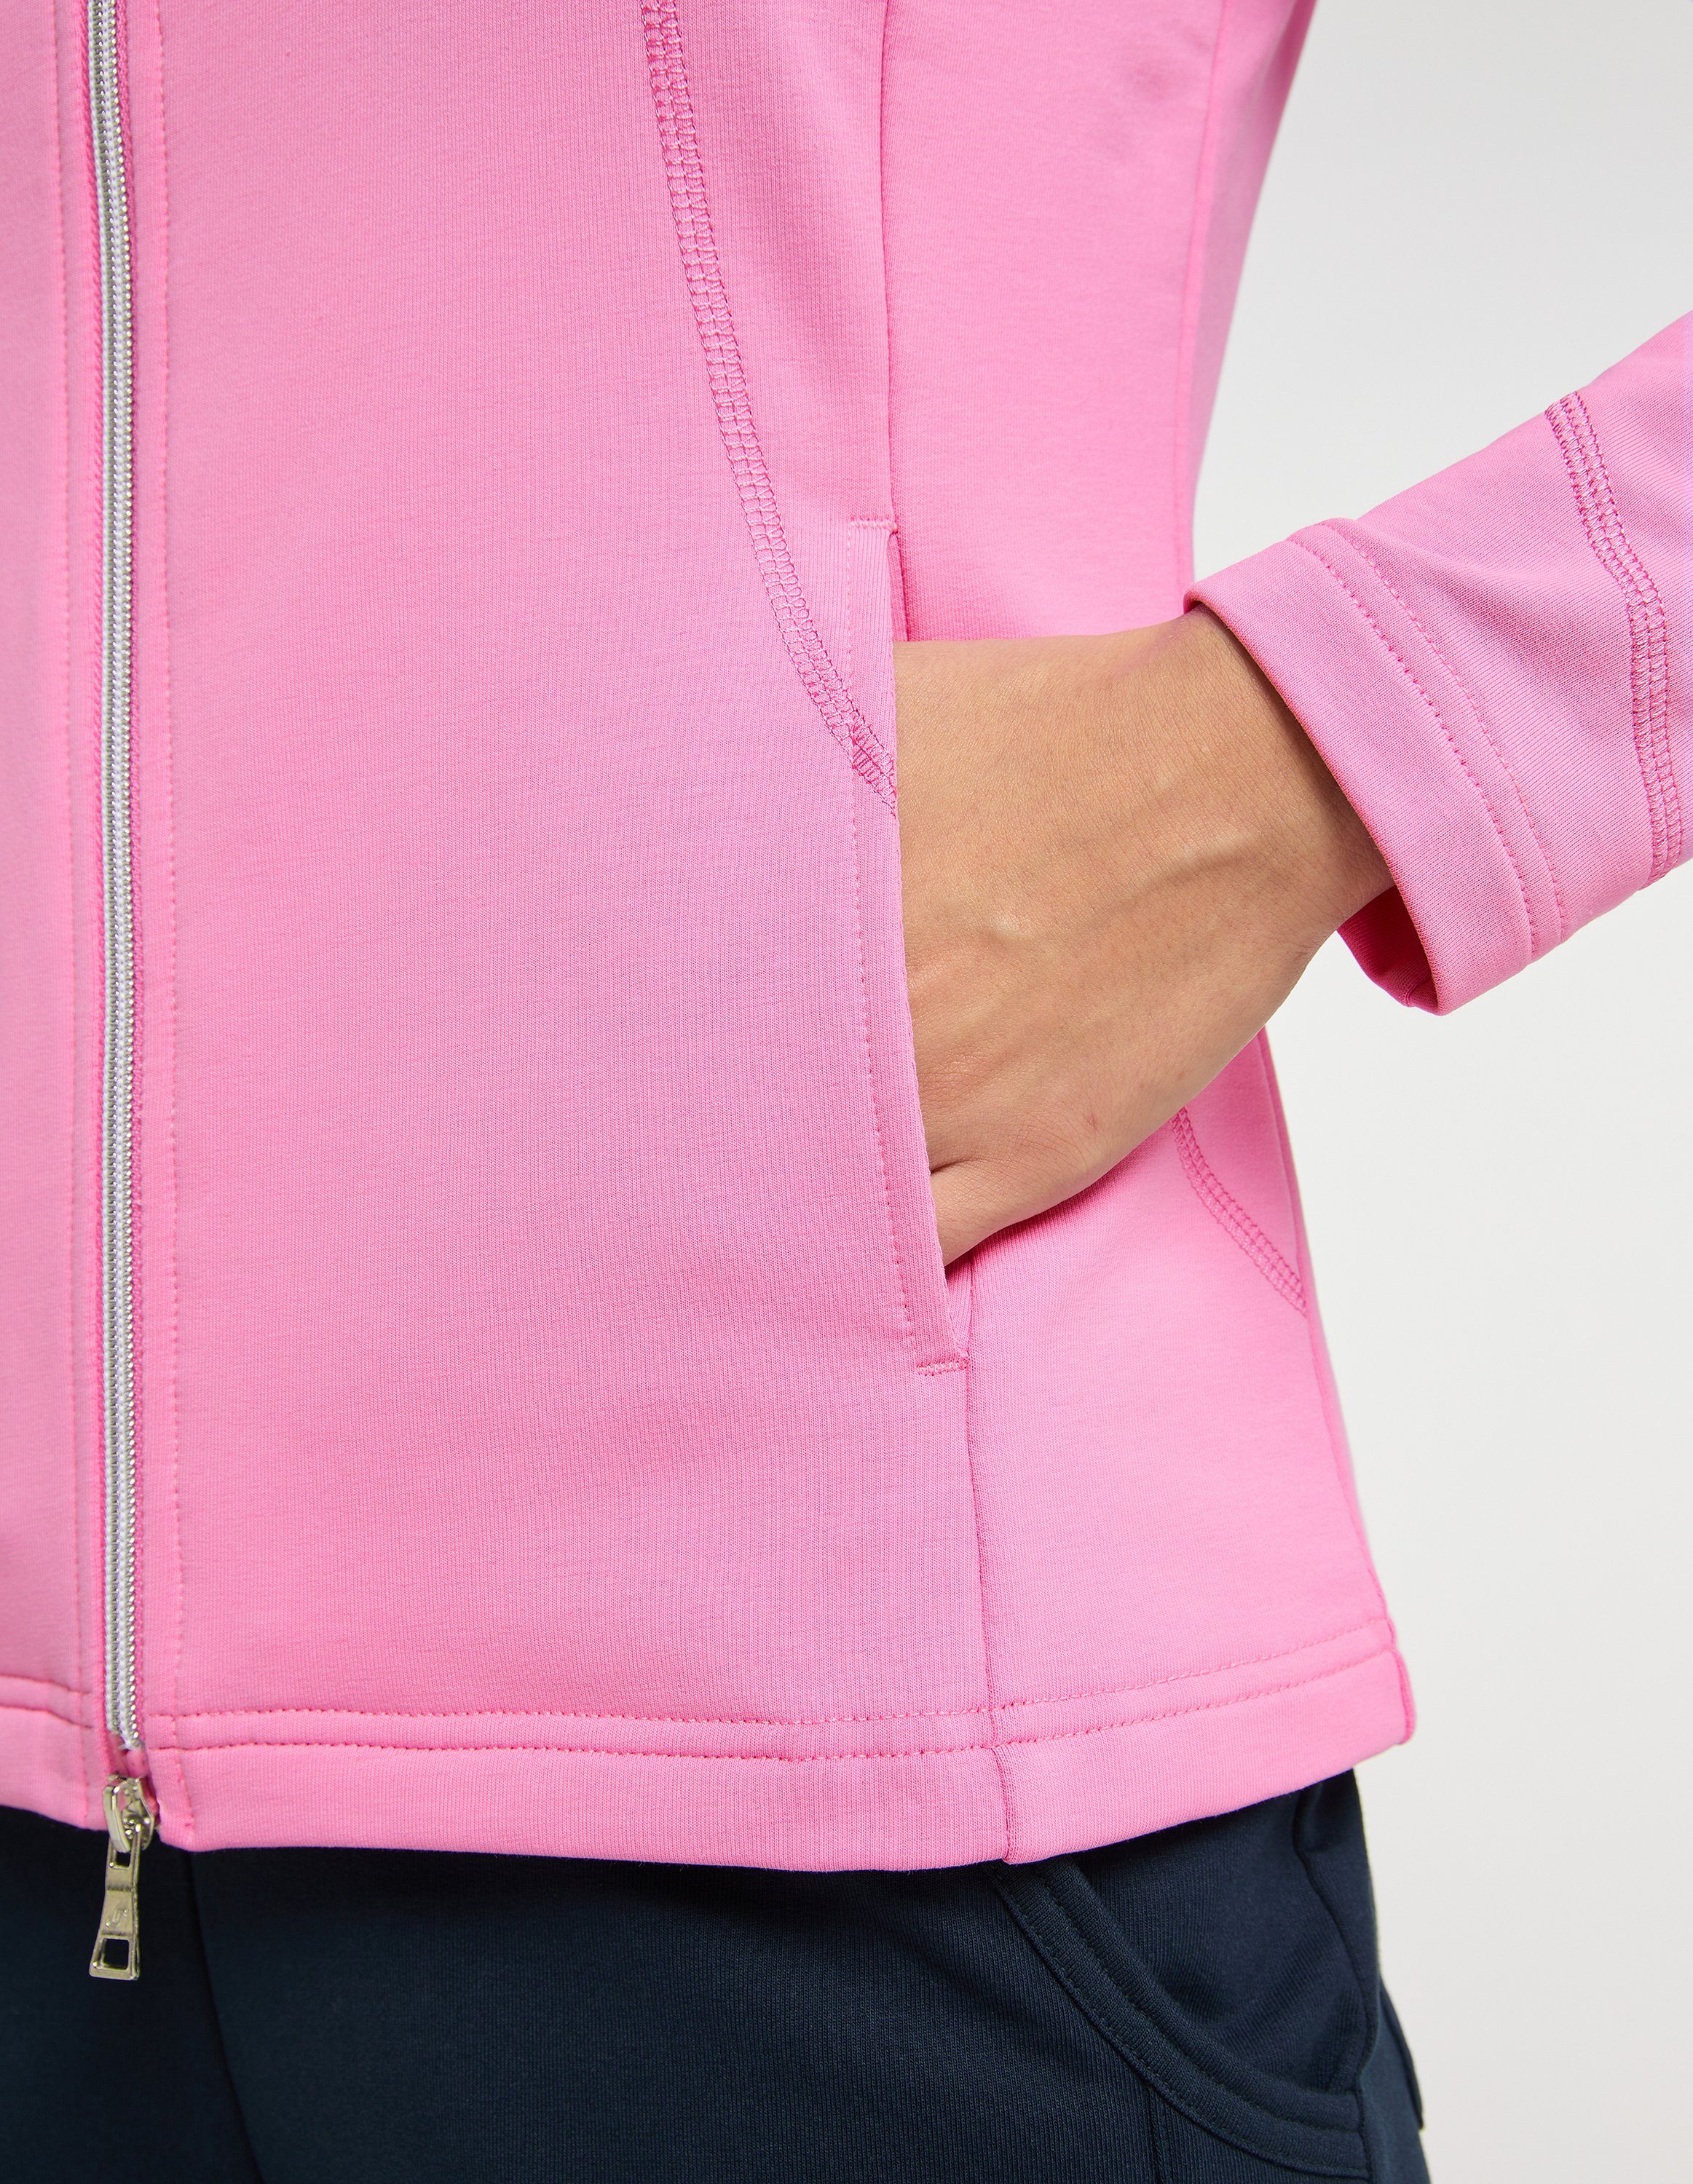 Trainingsjacke pink DORIT Jacke Sportswear Joy cyclam